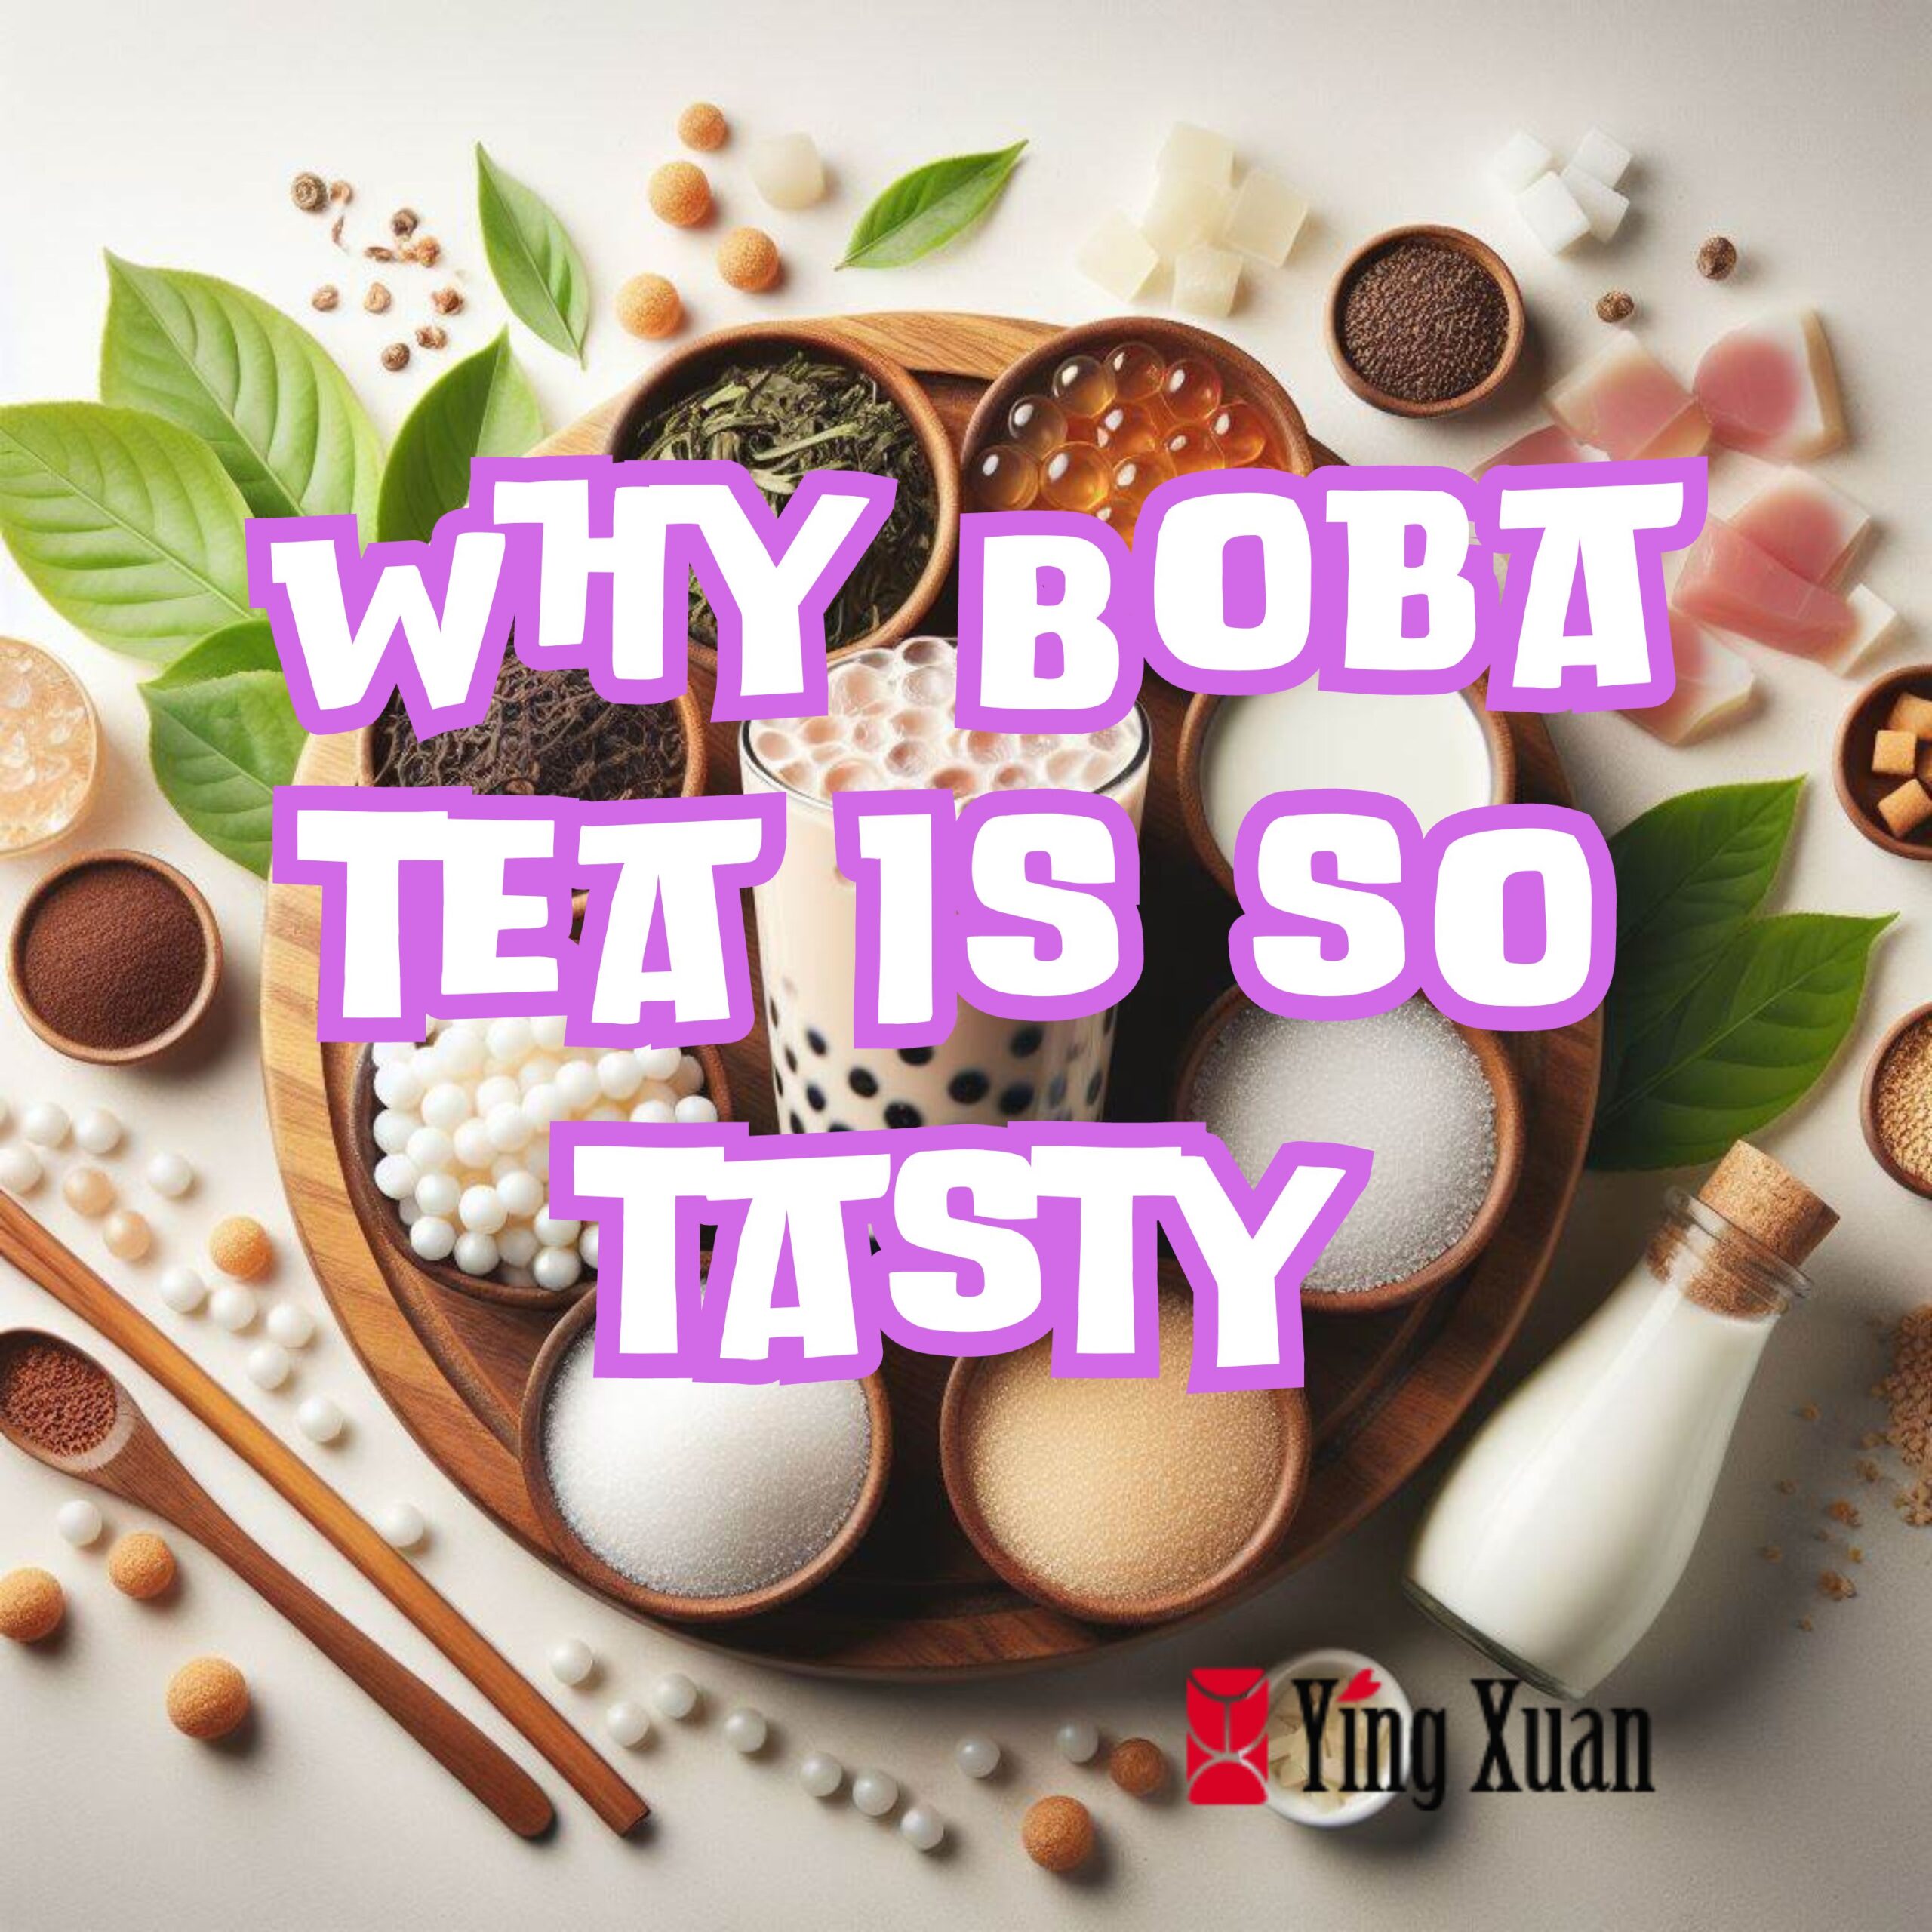 Why Boba tea is so tasty